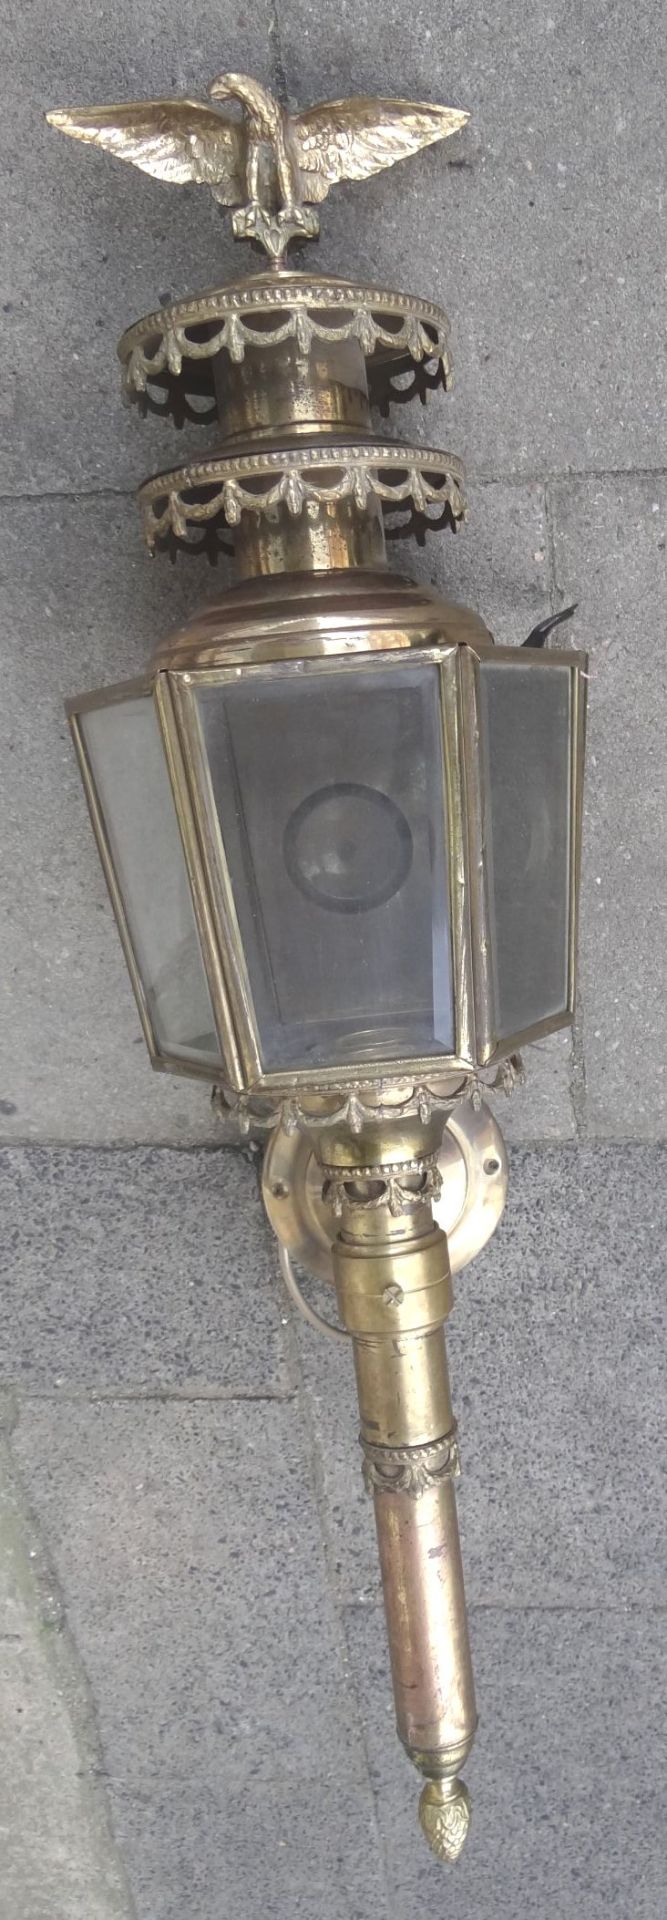 grosse, massive Kutschenlampe, Messing/Bronze, H-75 cm, B-28 cm, elektrisch, guter Zustand - Bild 2 aus 9